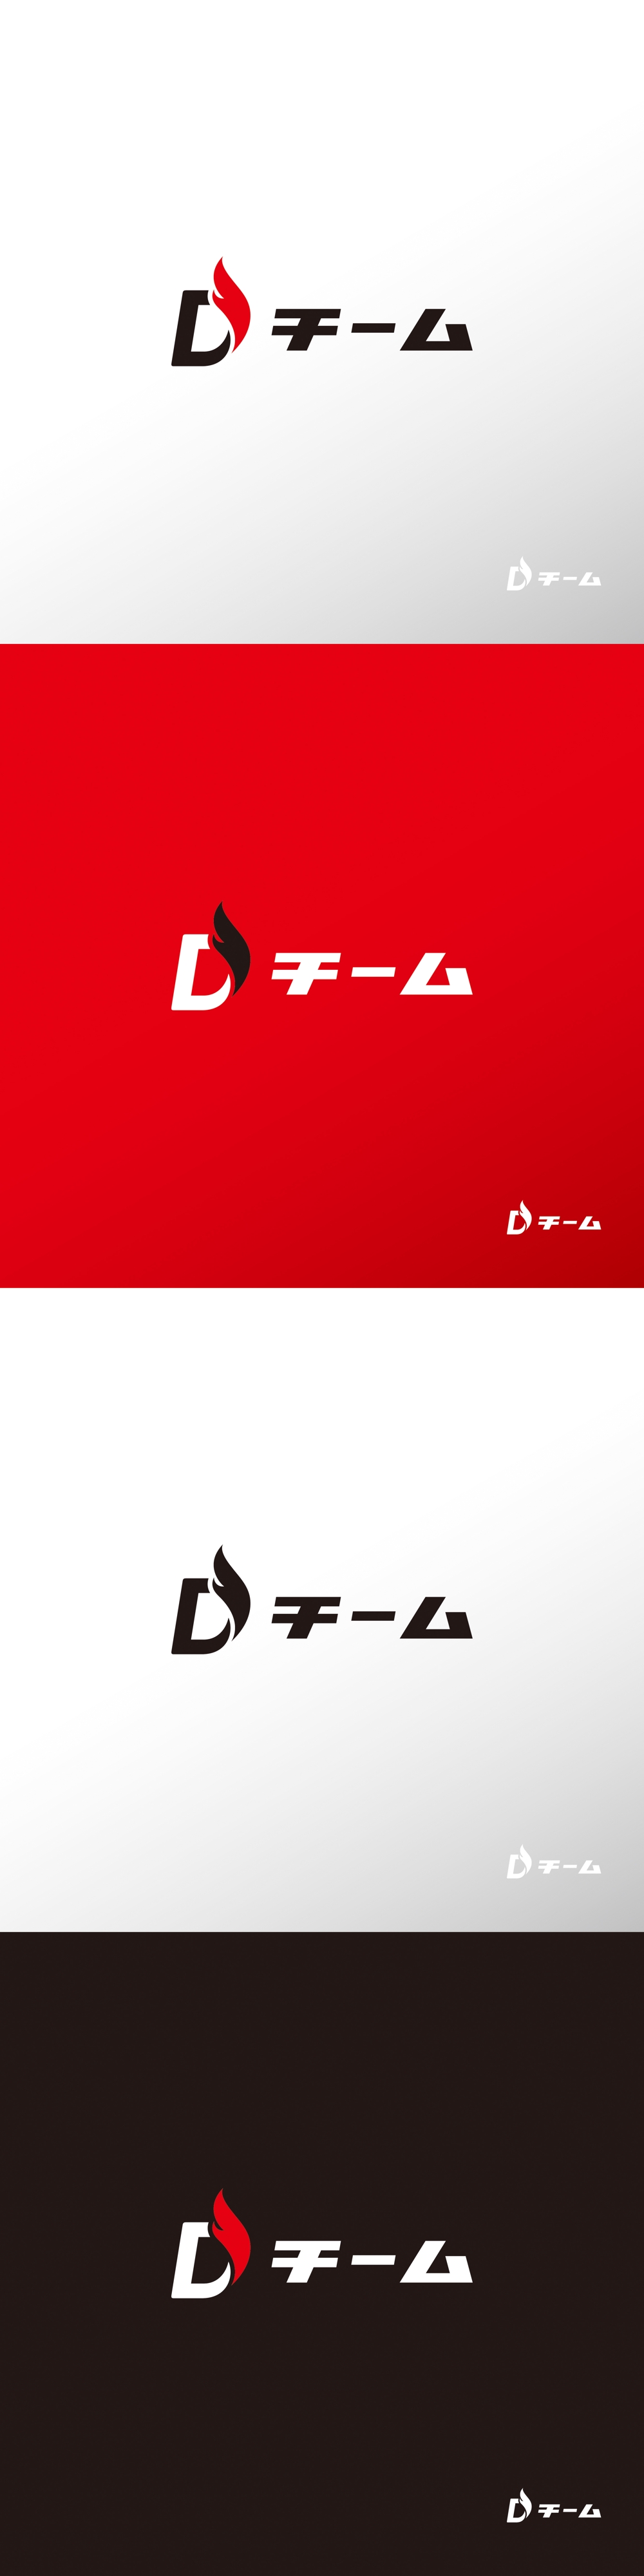 サービス_Dチーム_ロゴA1.jpg